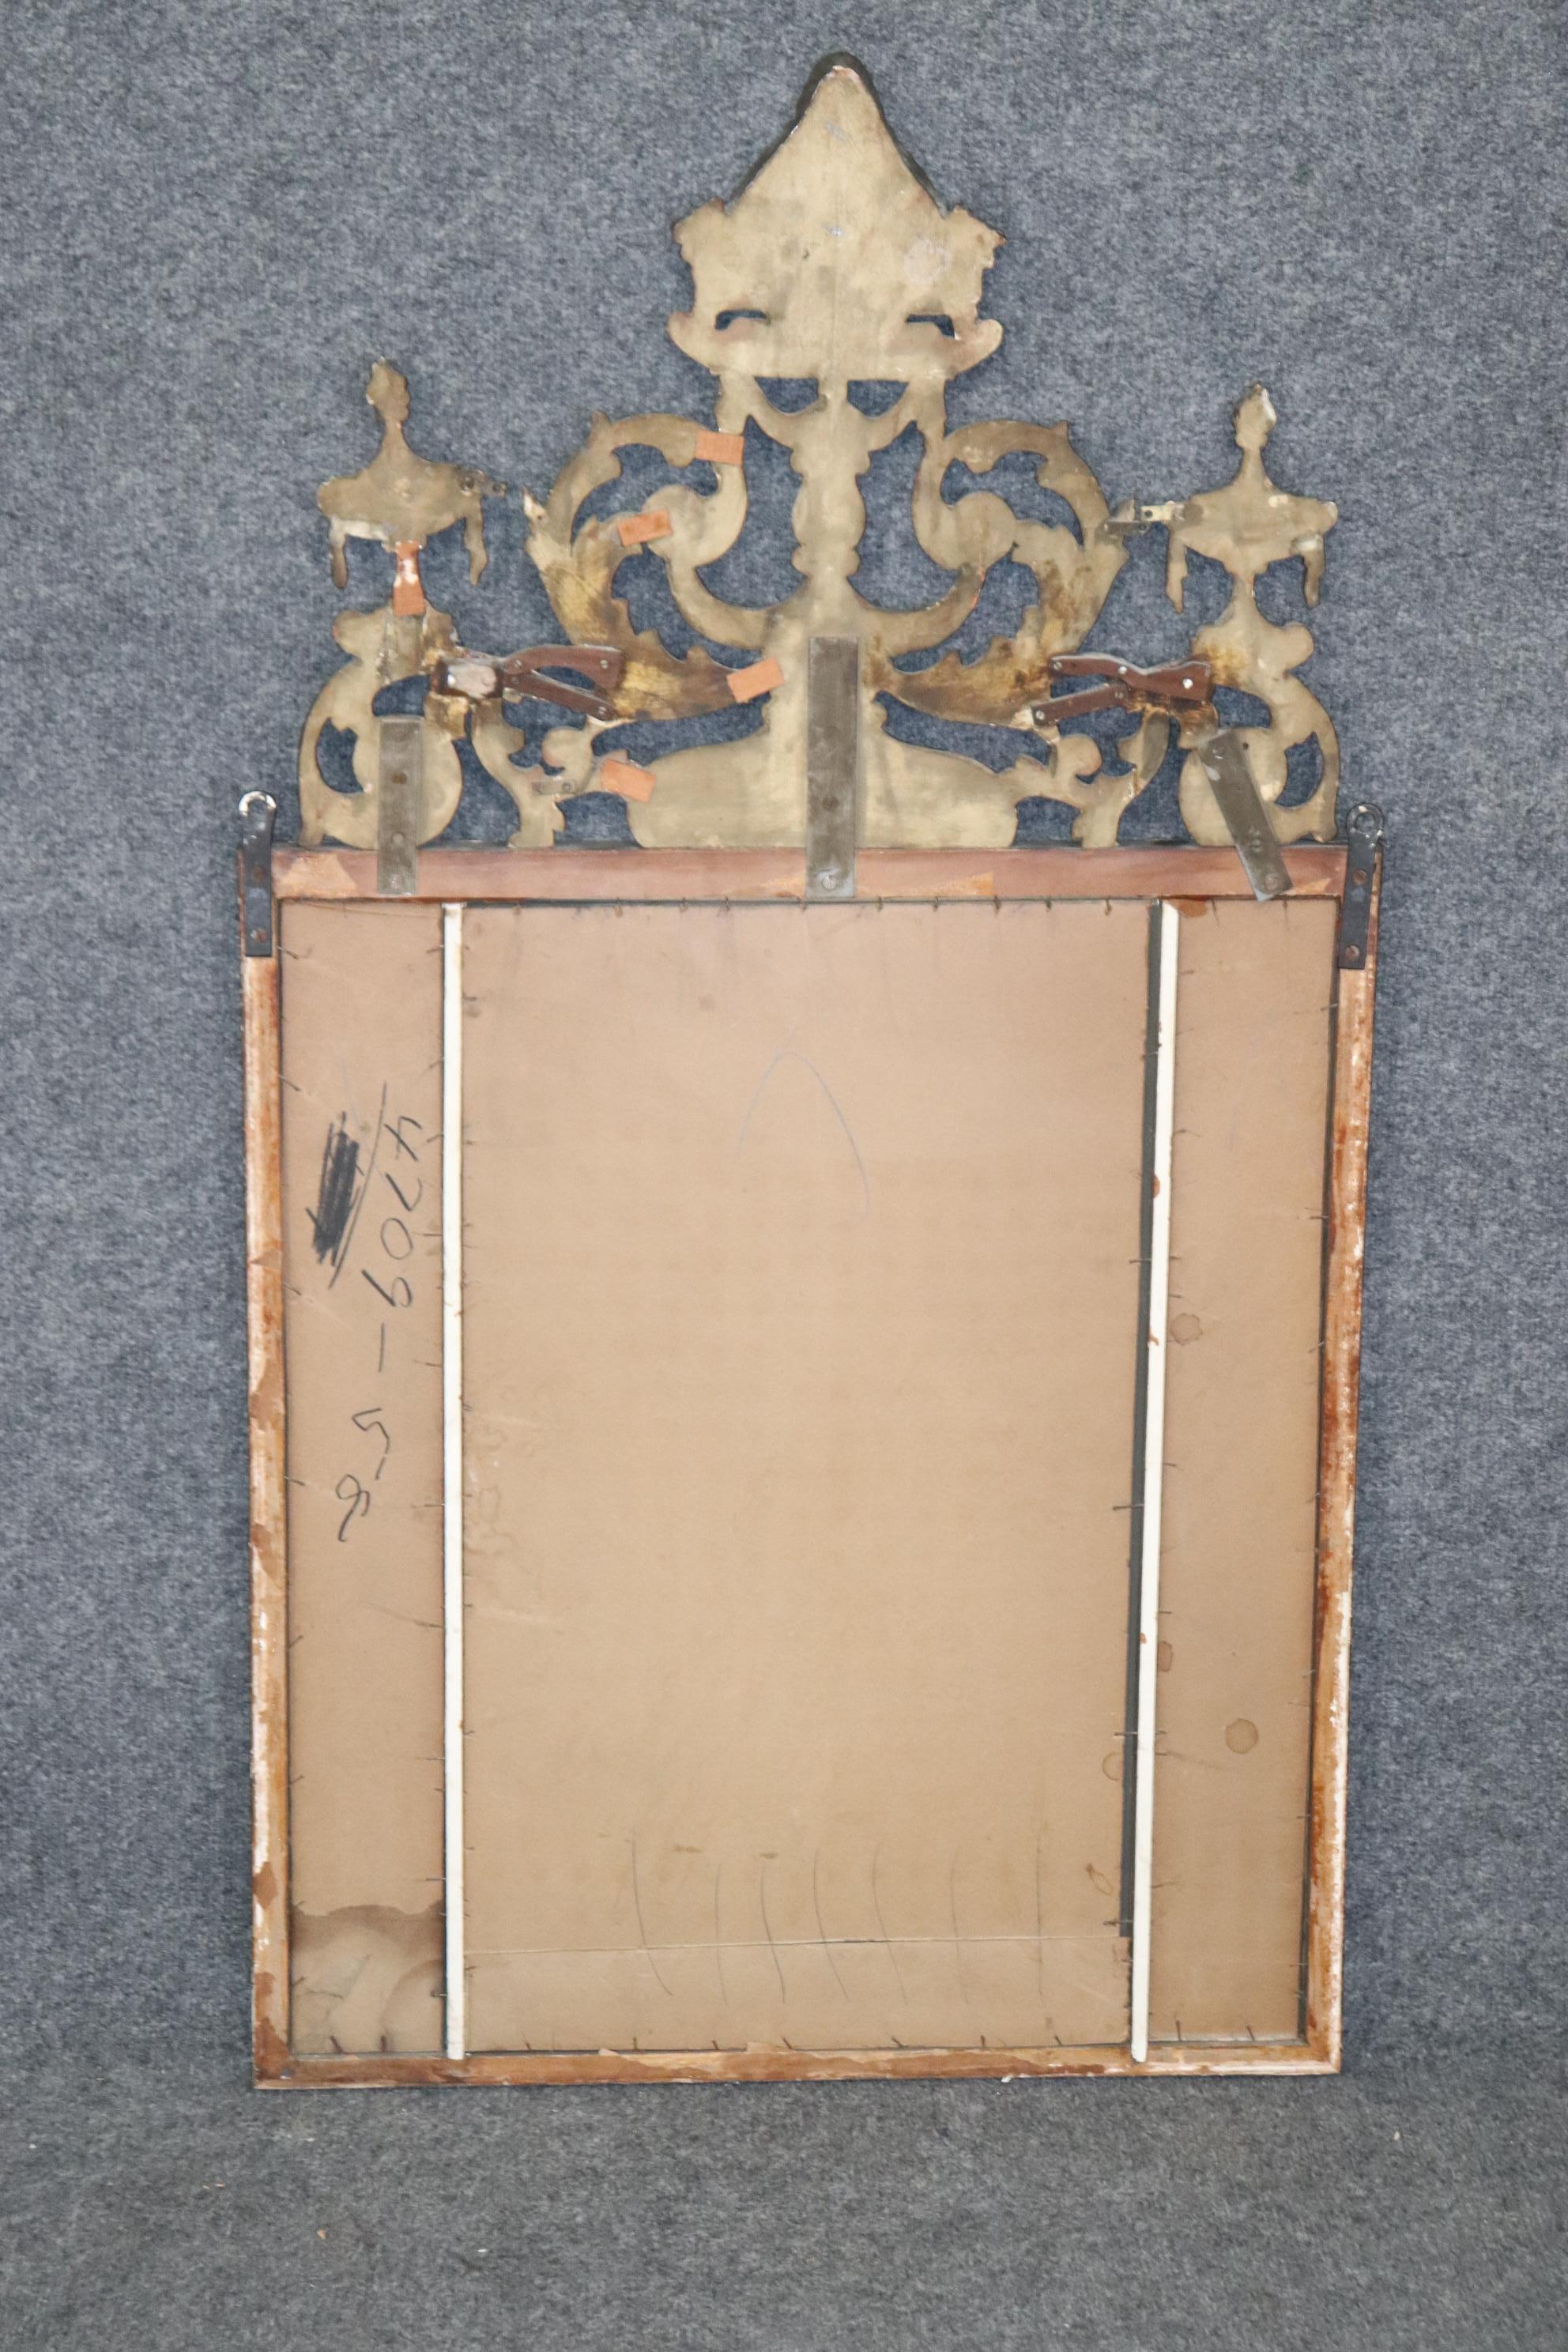 Abmessungen- H:47 1/2n B: 26 1/4in T: 2in

Dieser Spiegel im französischen Regency-Stil aus geschnitztem Holz und Gesso ist von höchster Qualität und perfekt für Sie und Ihr Zuhause! Wenn Sie sich die Fotos ansehen, werden Sie die Details der